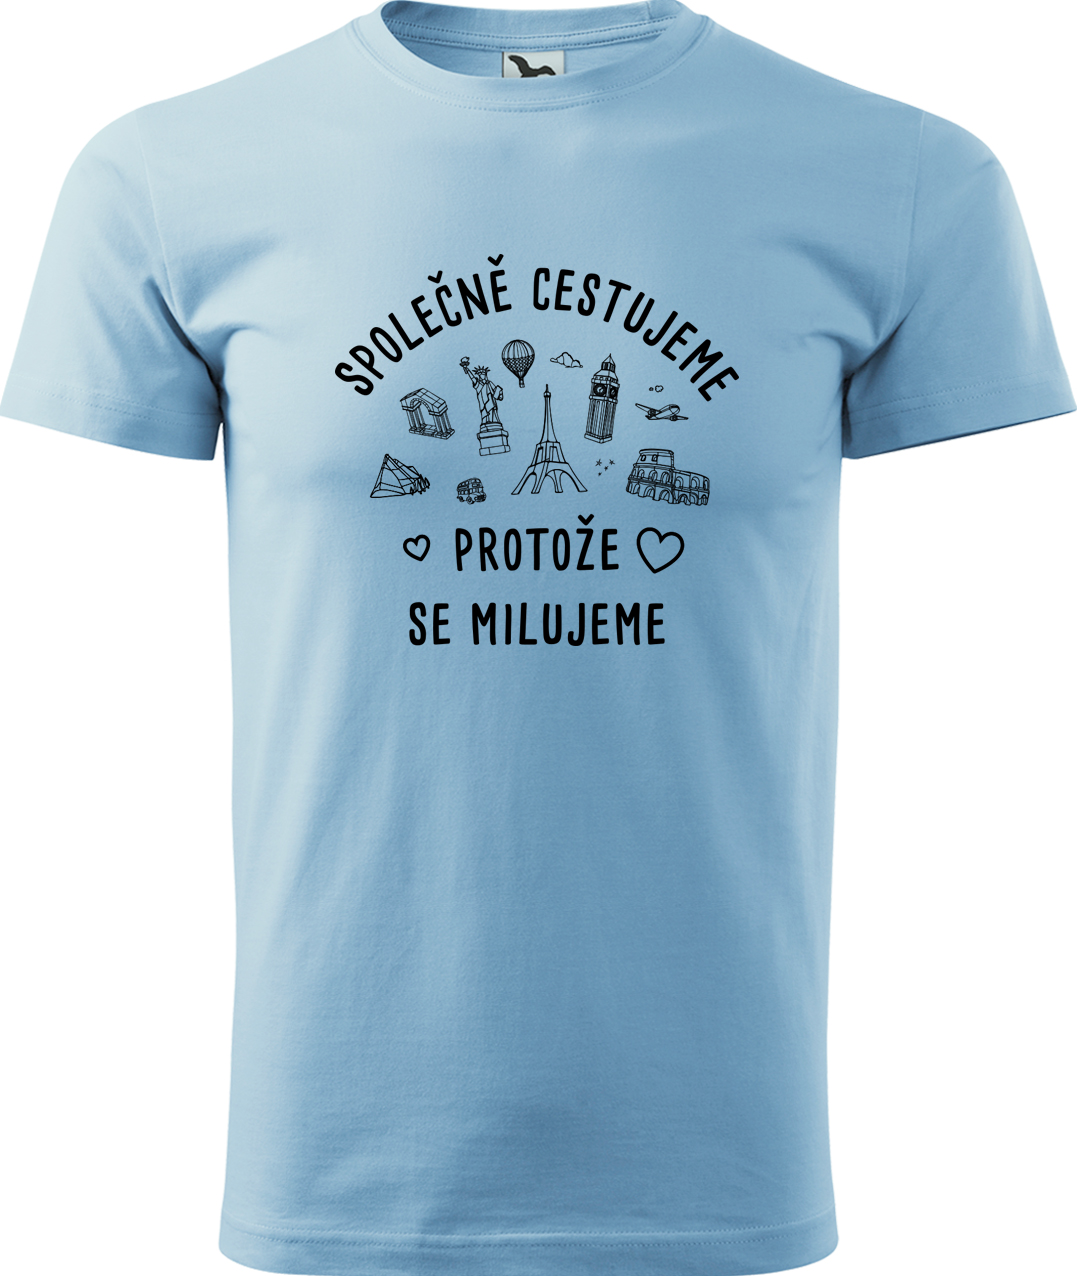 Pánské cestovatelské tričko - Společně cestujeme protože se milujeme Velikost: M, Barva: Nebesky modrá (15), Střih: pánský